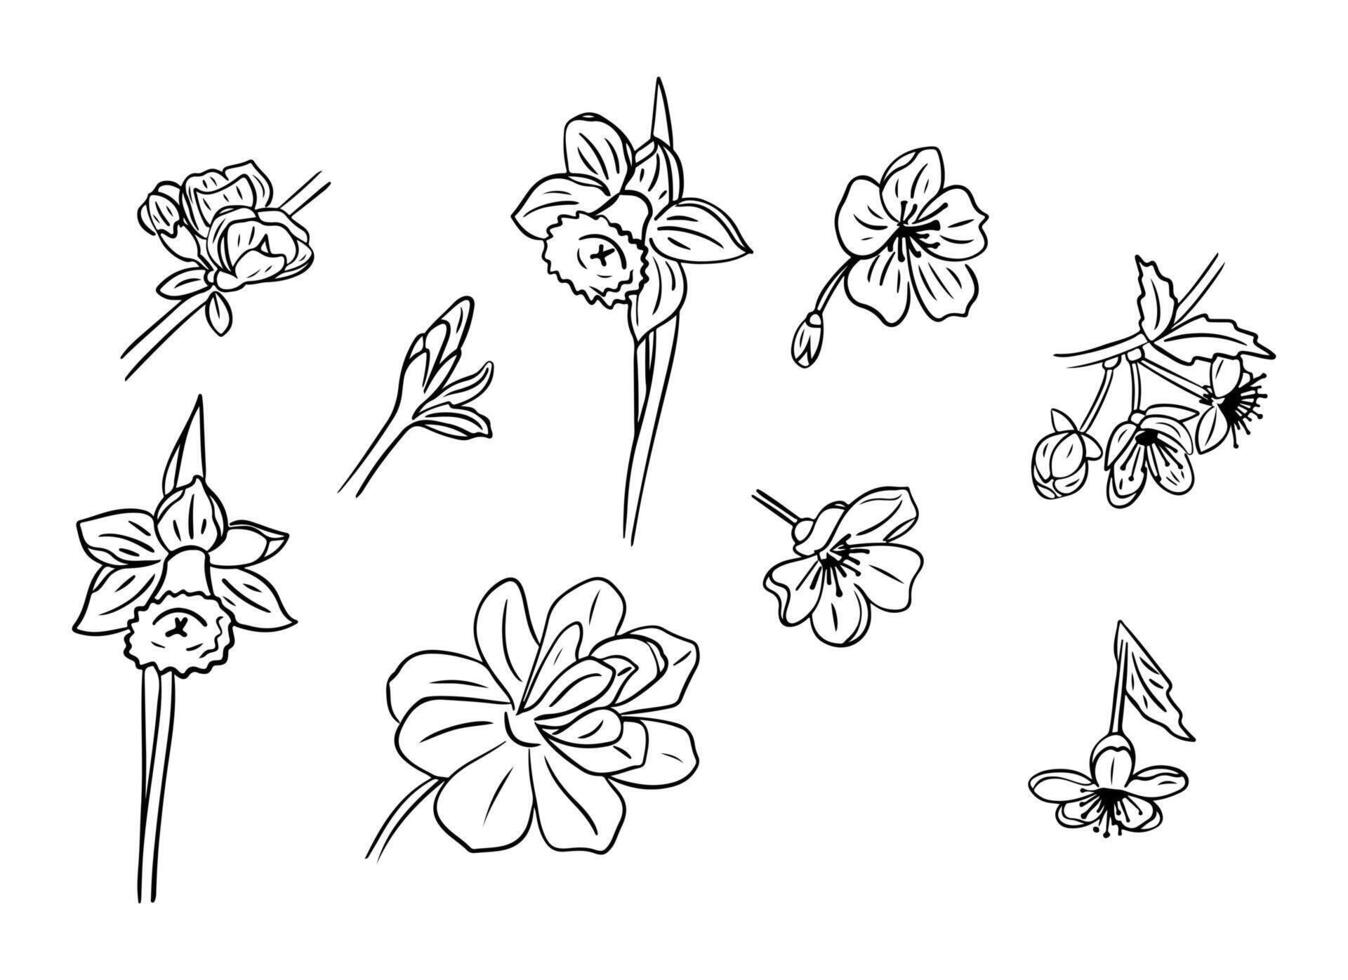 schwarz Hand gezeichnet Gekritzel einstellen von Frühling Blumen. skizzenhaft schwarz Kontur blühen Pflanze auf Weiß Hintergrund. Ideal zum Färbung Seiten, Tätowierung, Muster vektor